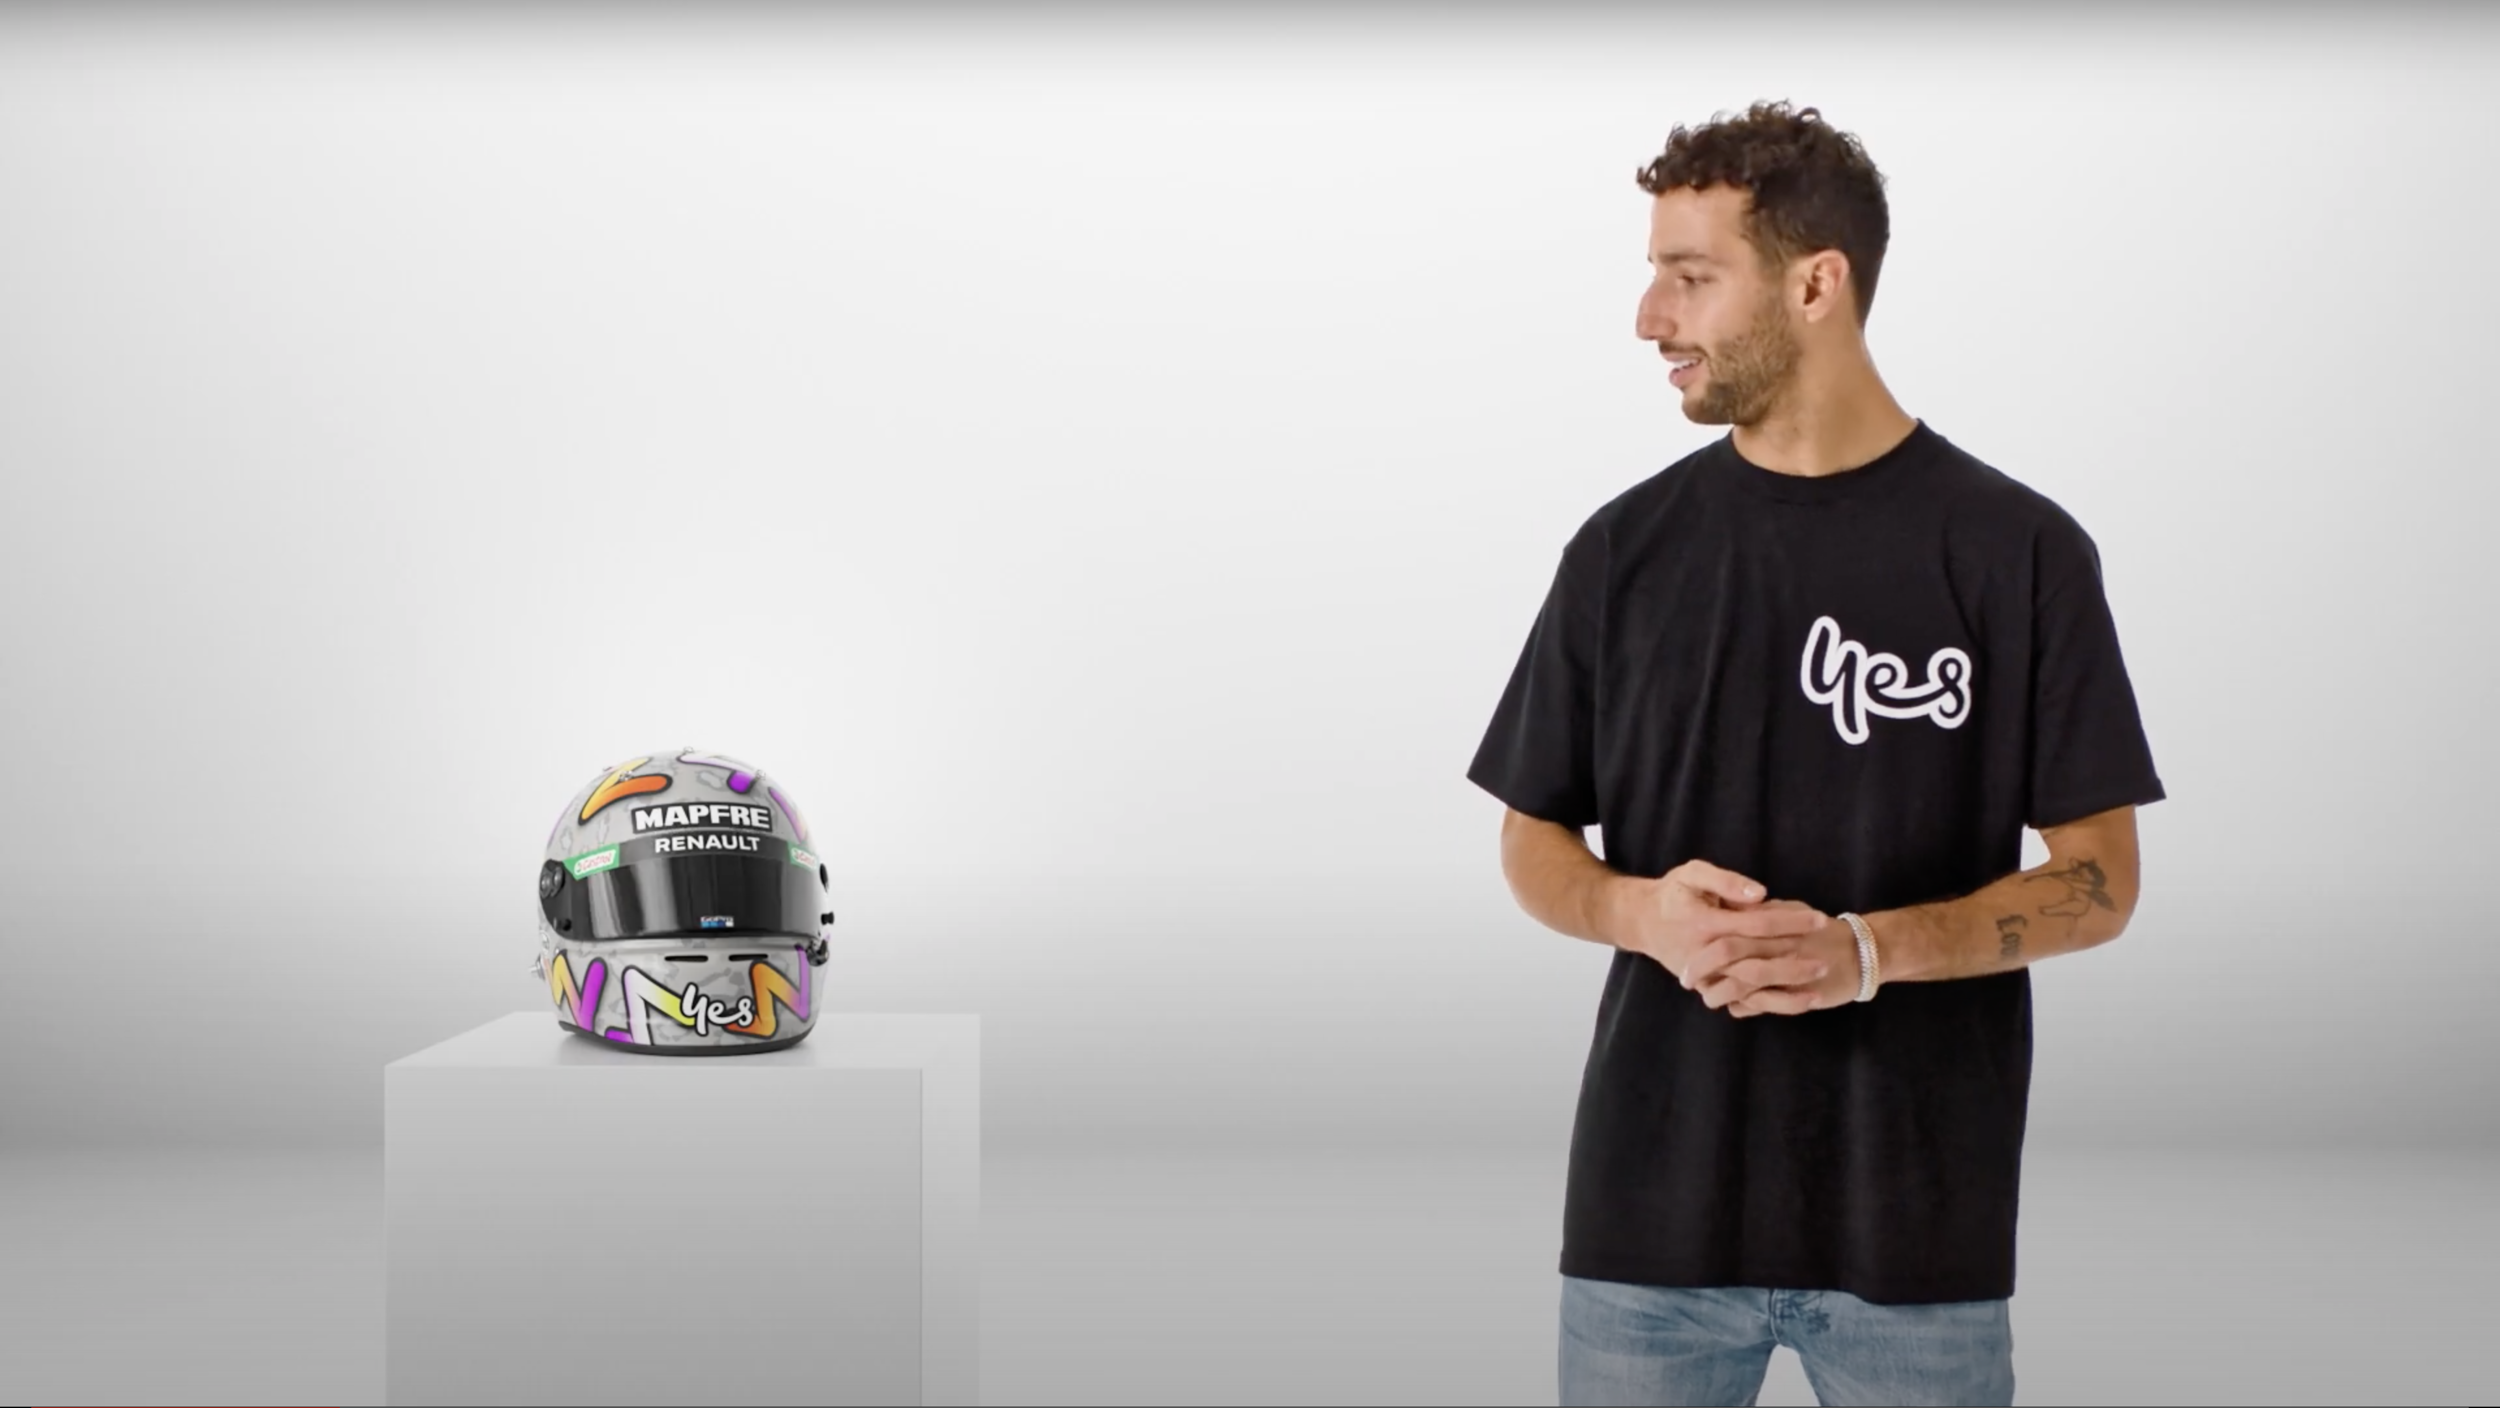 Formula1 Driver Dan Ricciardo is back... and his helmet!